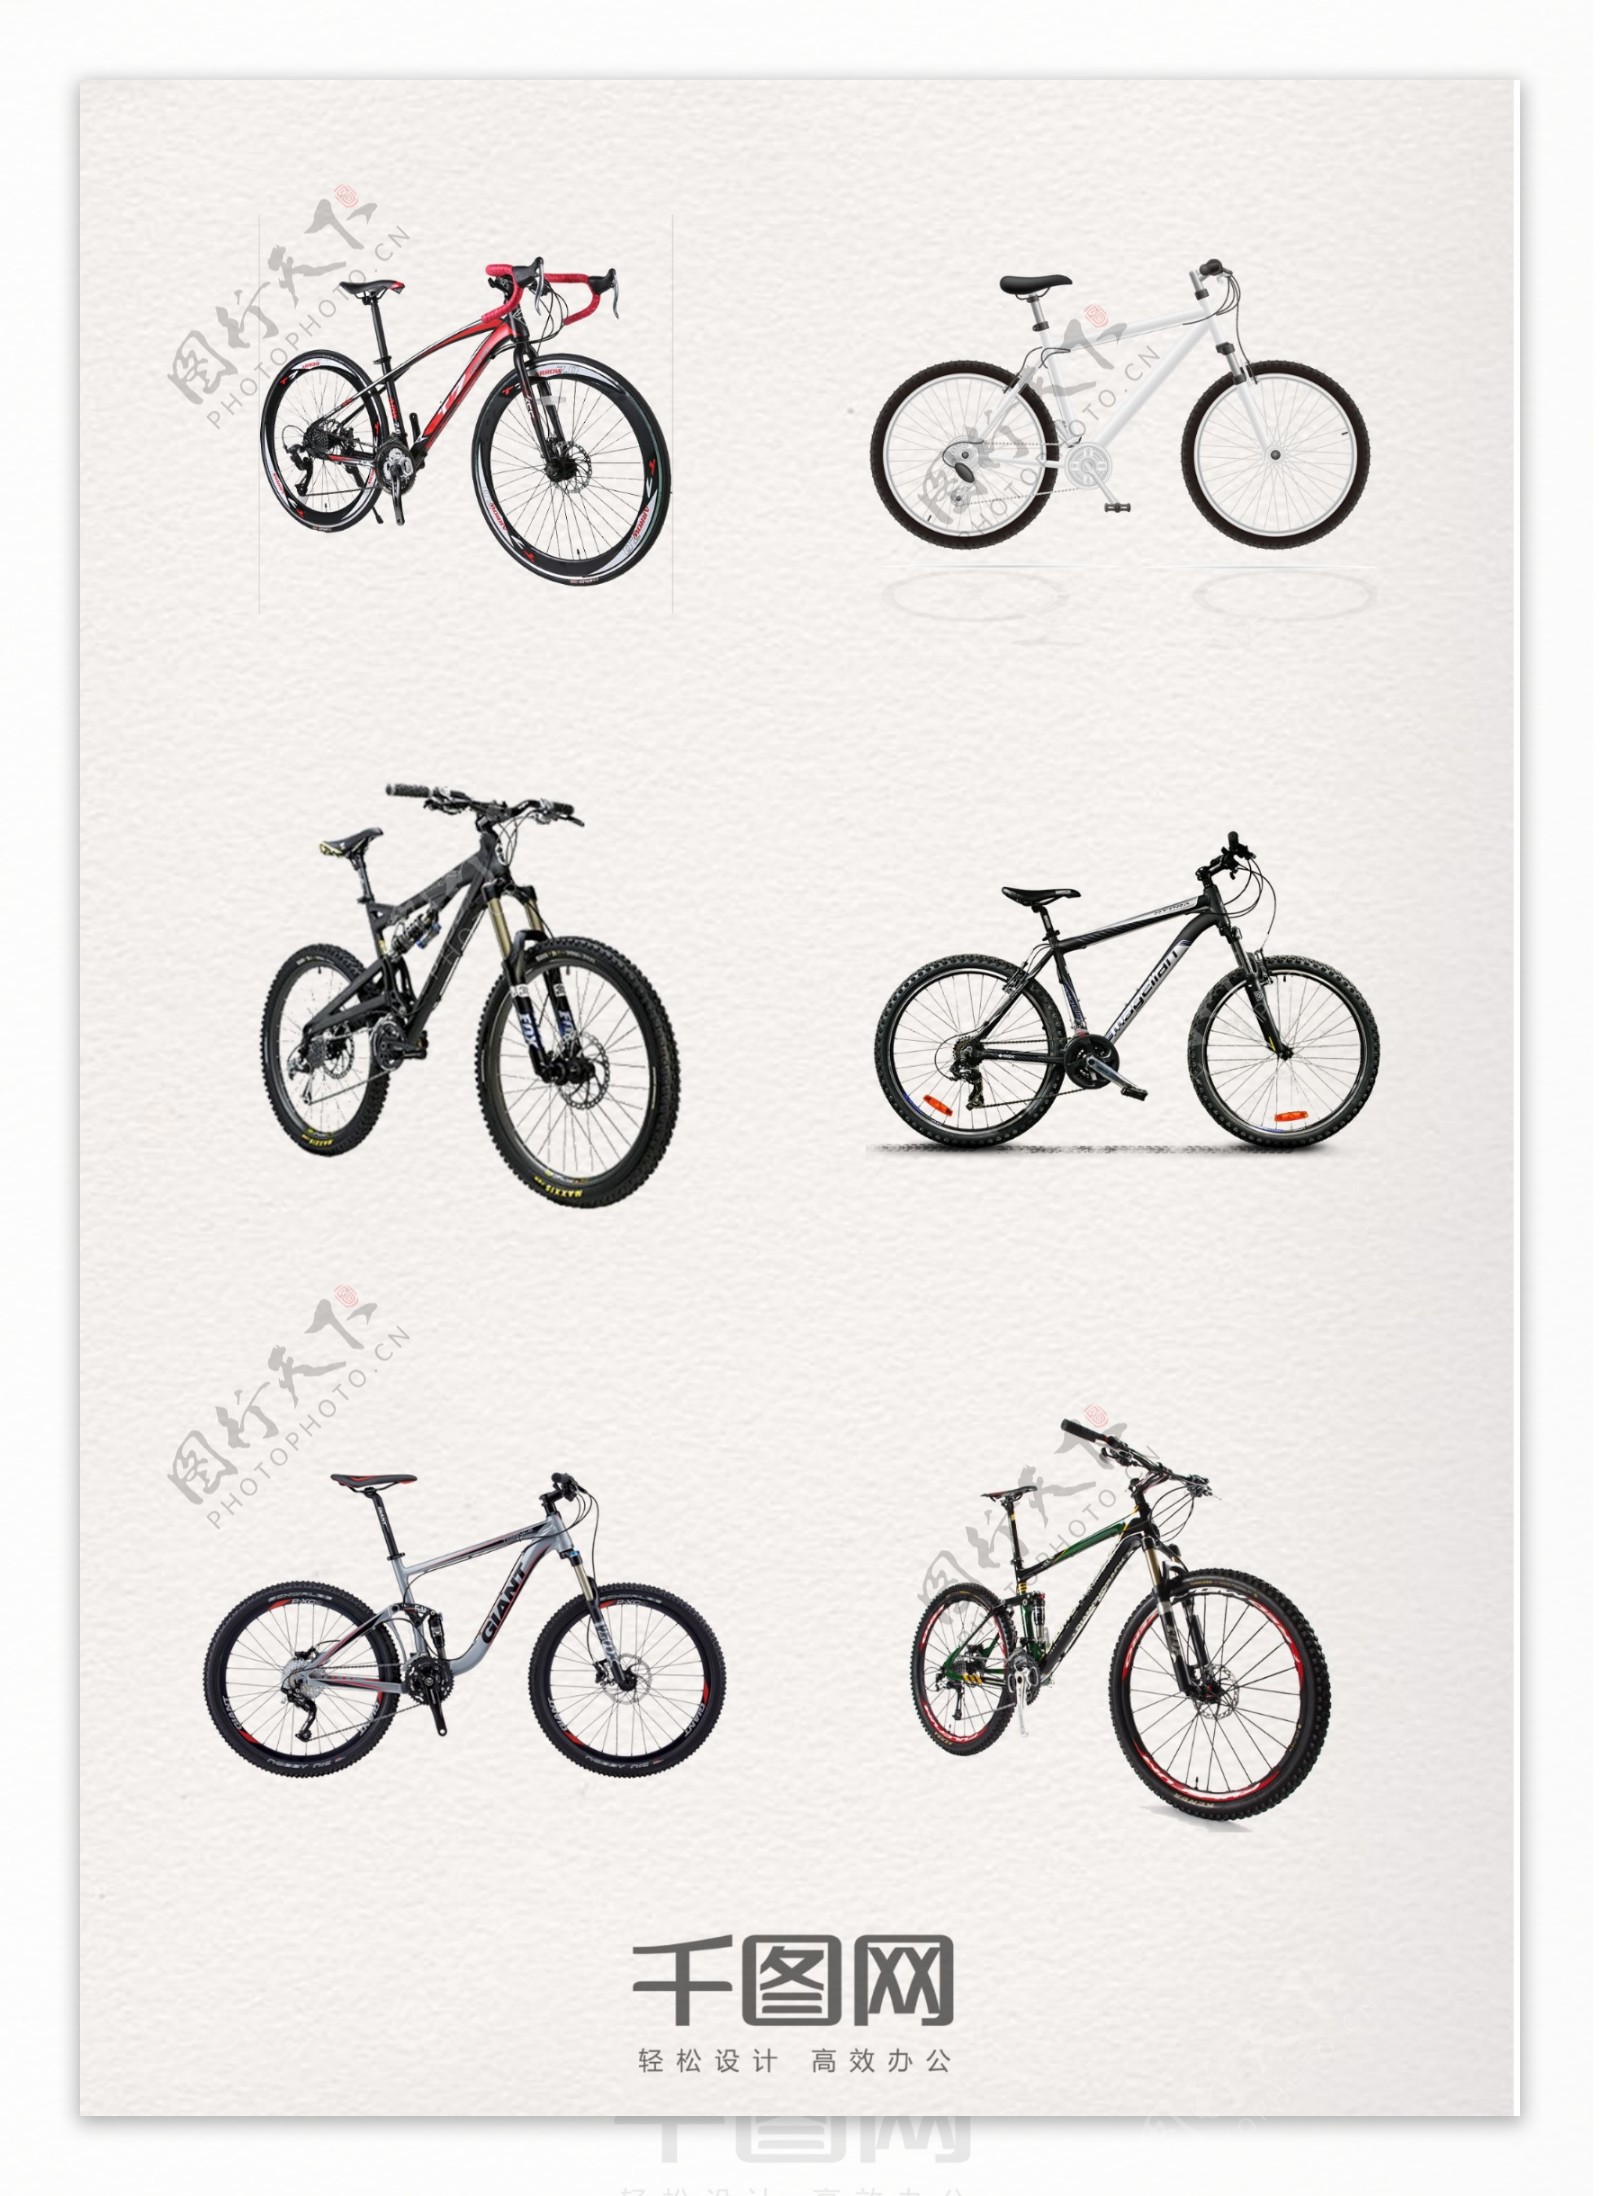 自行车单车设计元素